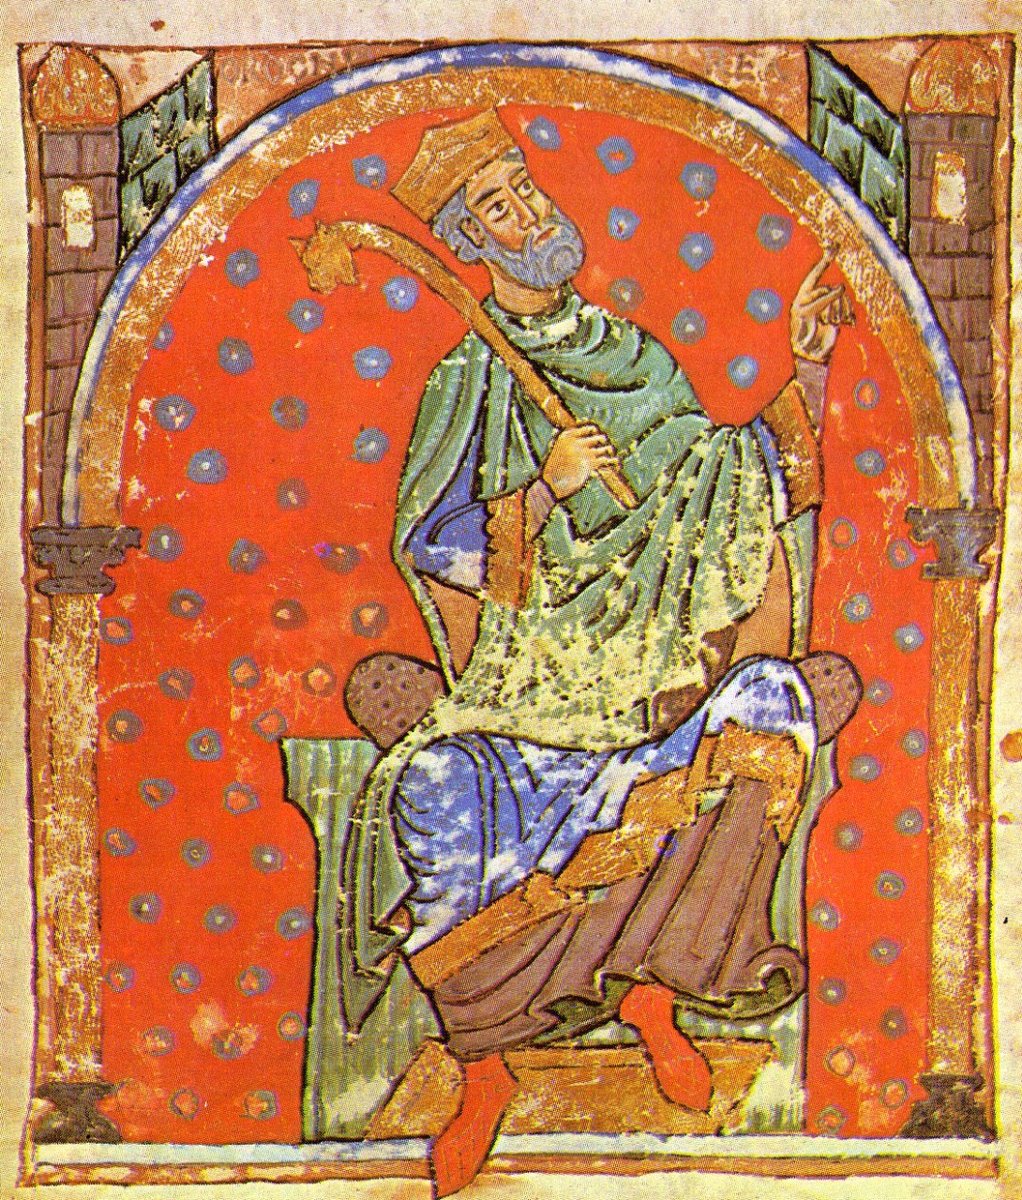 El rey de León Ordoño IV (c. 925-962/963) ha pasado a la Historia con el sobrenombre de 'el Malo' porque así lo denominó el obispo de Oviedo Pelayo en su crónica debido a su incapacidad para hacer frente a sus enemigos y terminar huyendo.